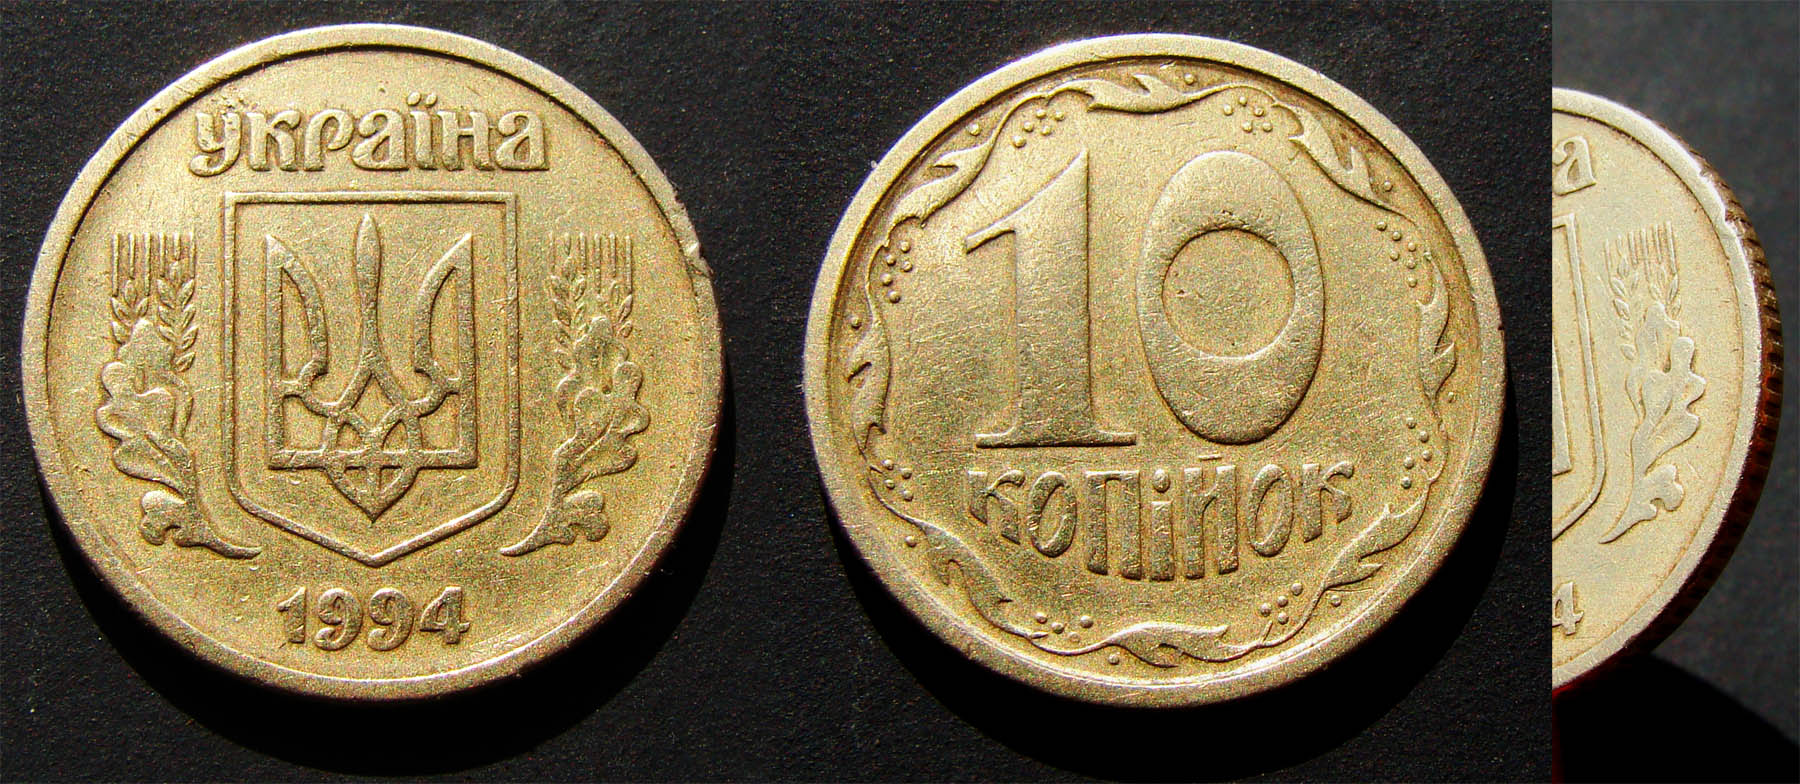 10 копеек 1994г. Примерная стоимость около 1150грн. - Дорогие монеты Украины